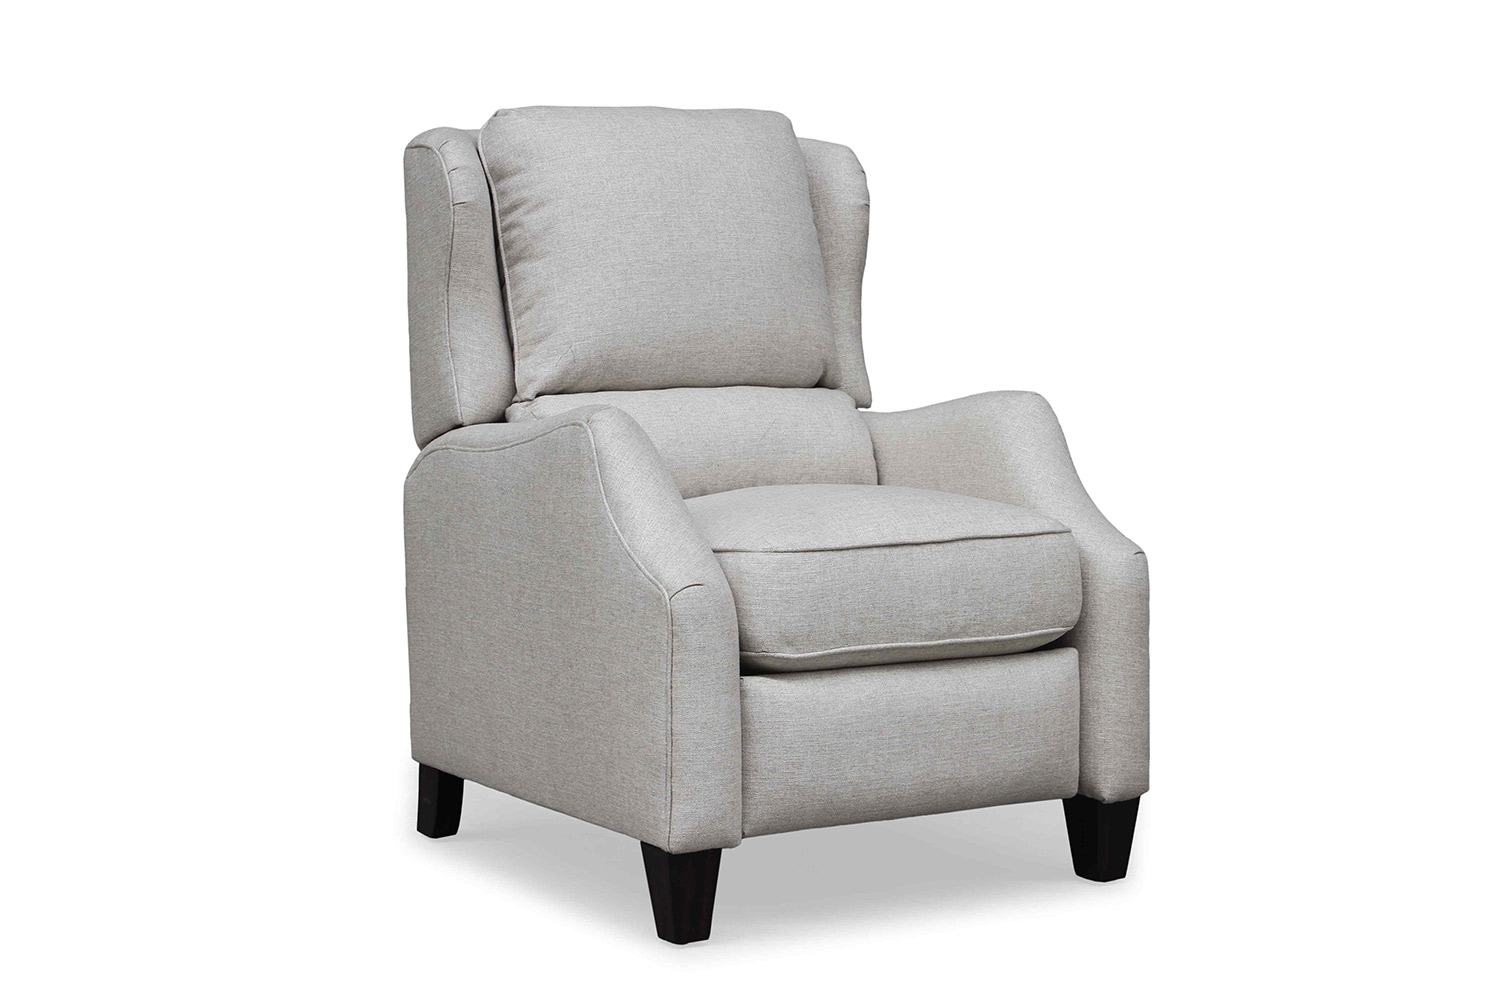 Barcalounger Berkeley Recliner Chair - Linen fabric